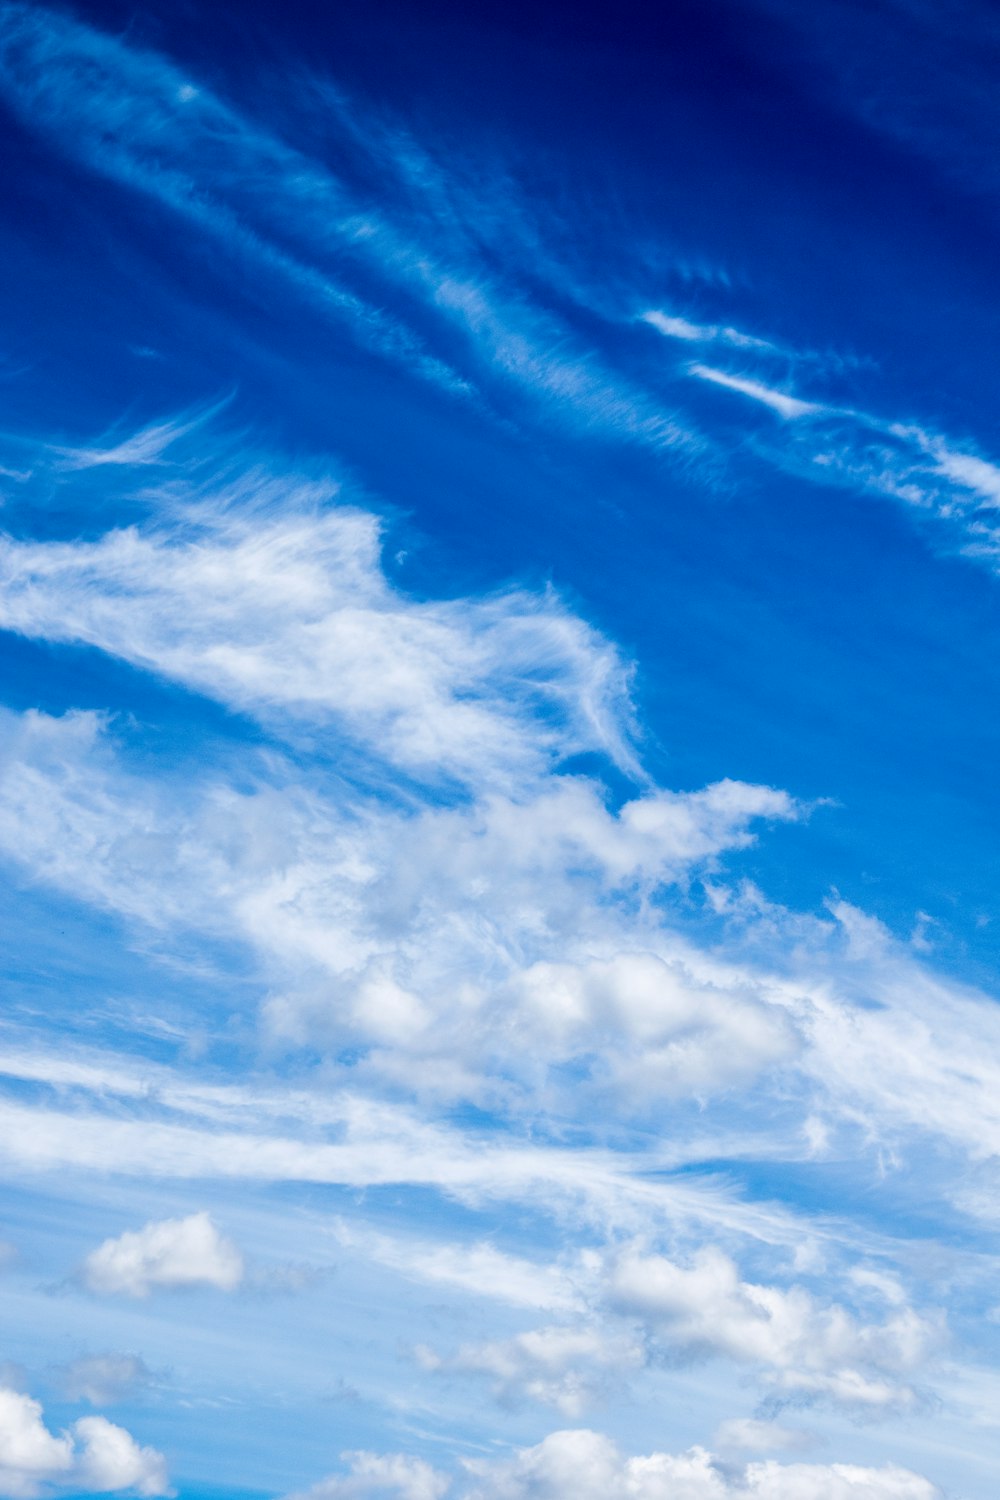 Ein Flugzeug fliegt durch einen blauen, bewölkten Himmel